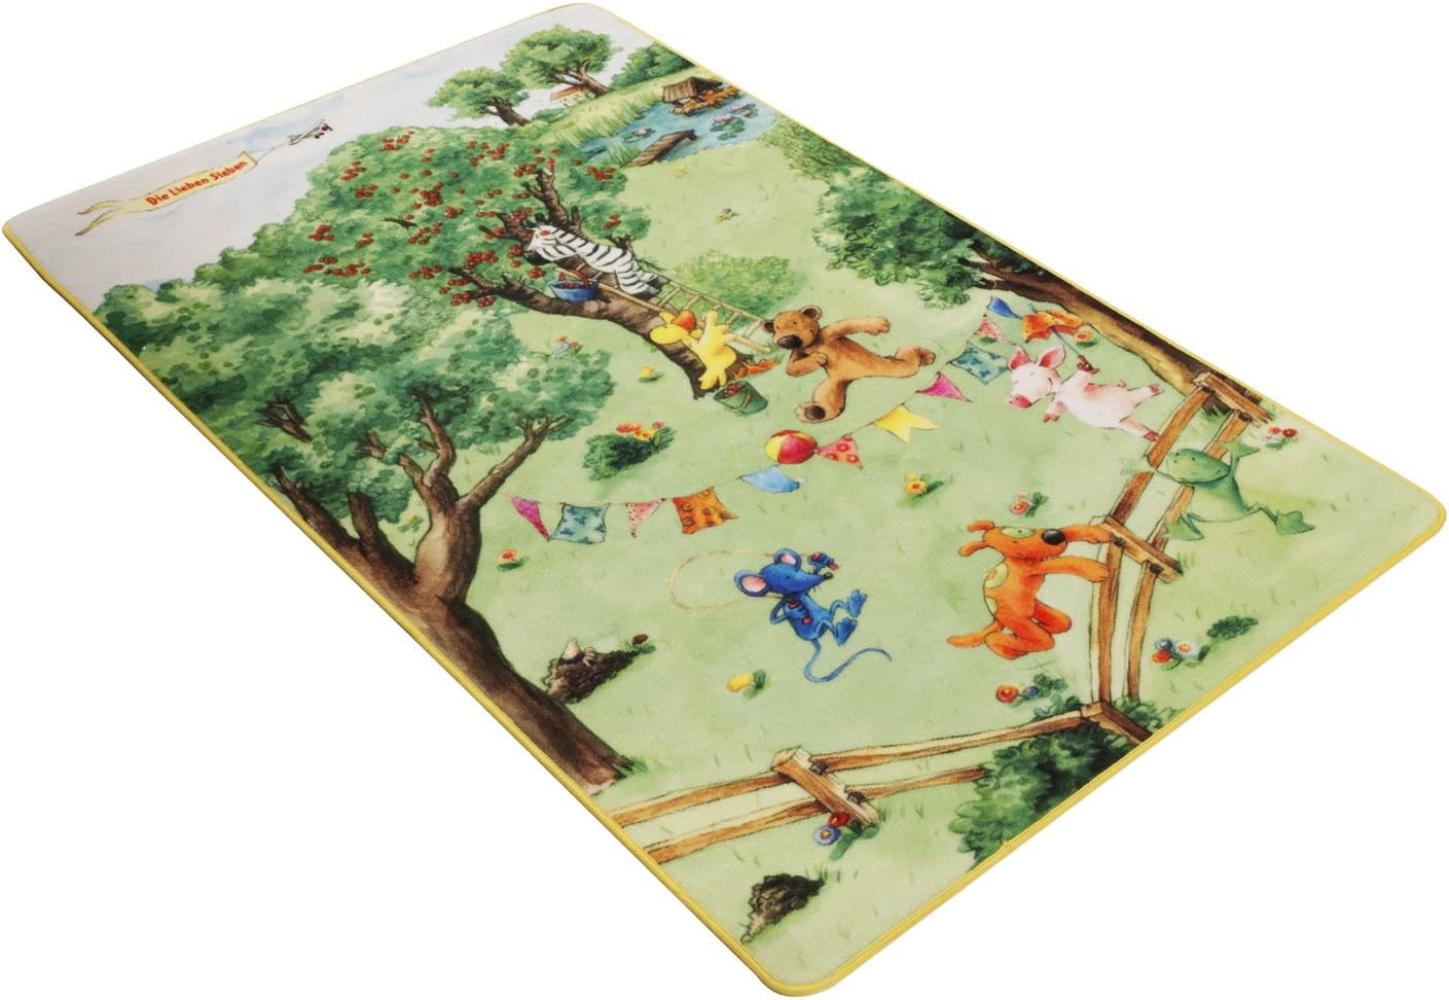 Böing Carpet 'Die Lieben Sieben' Spielteppich grün 140x200 cm Bild 1